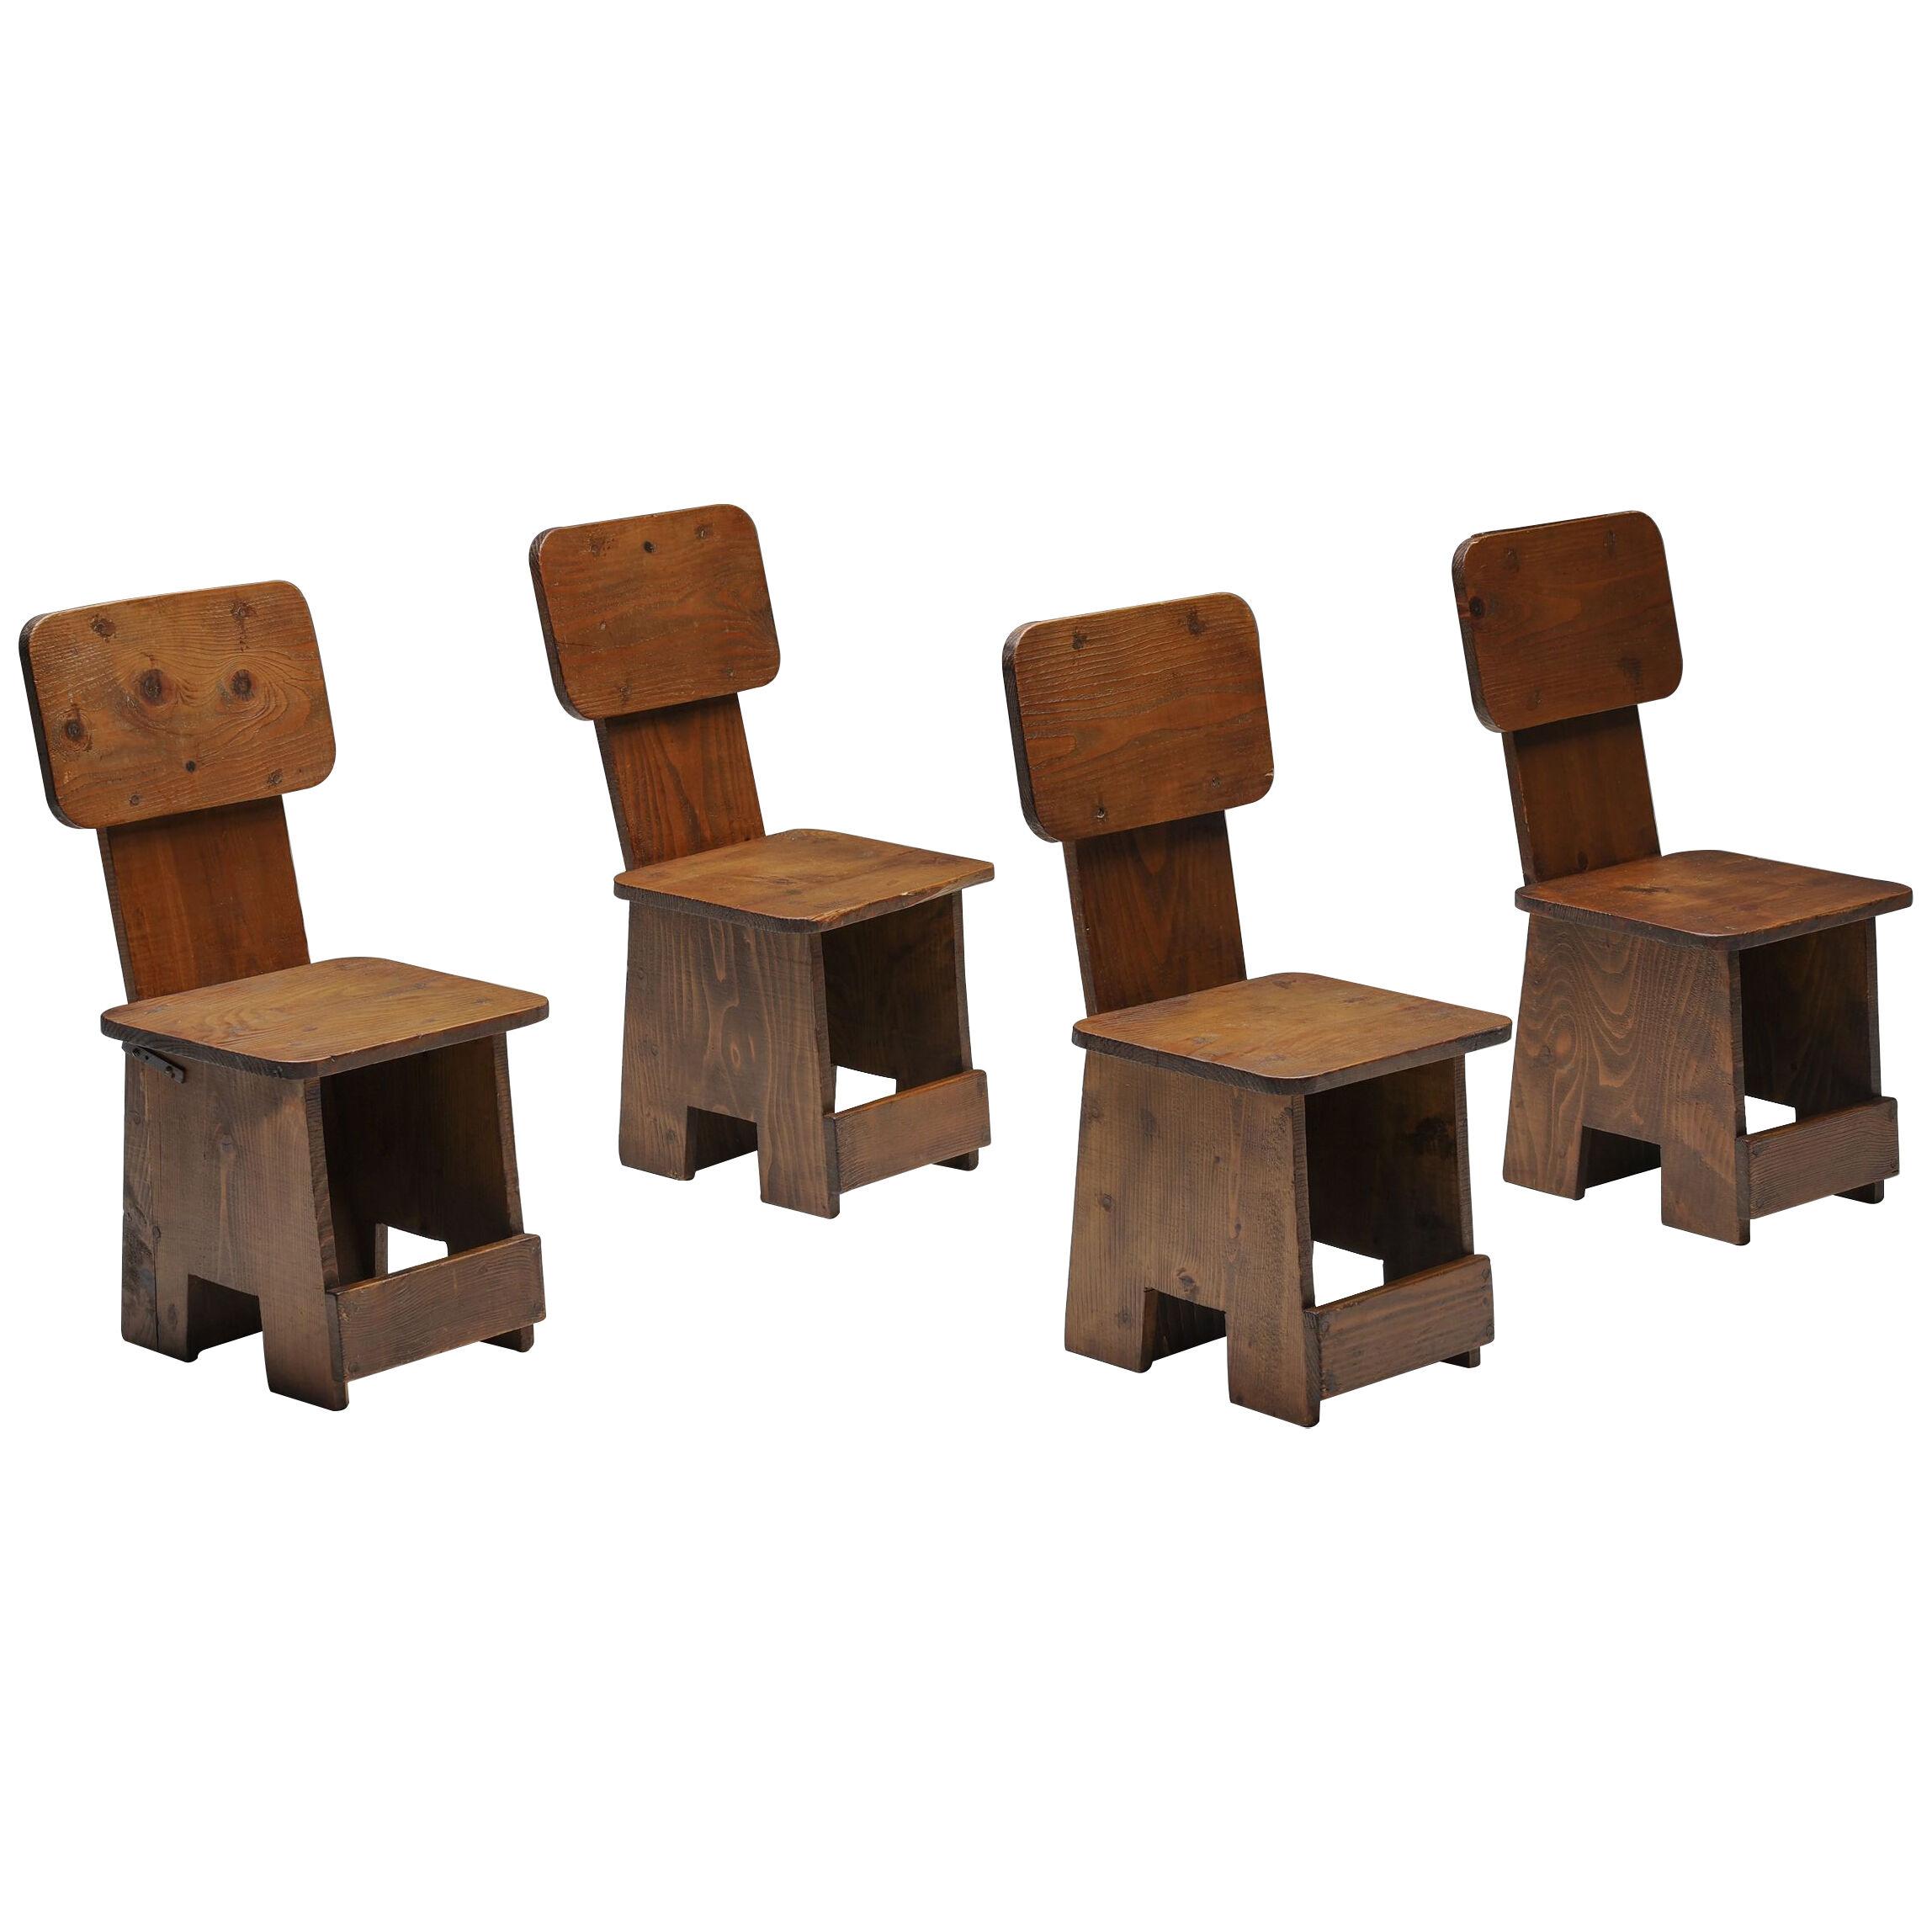 Wabi-Sabi Rustic Dining Chairs - 1960's